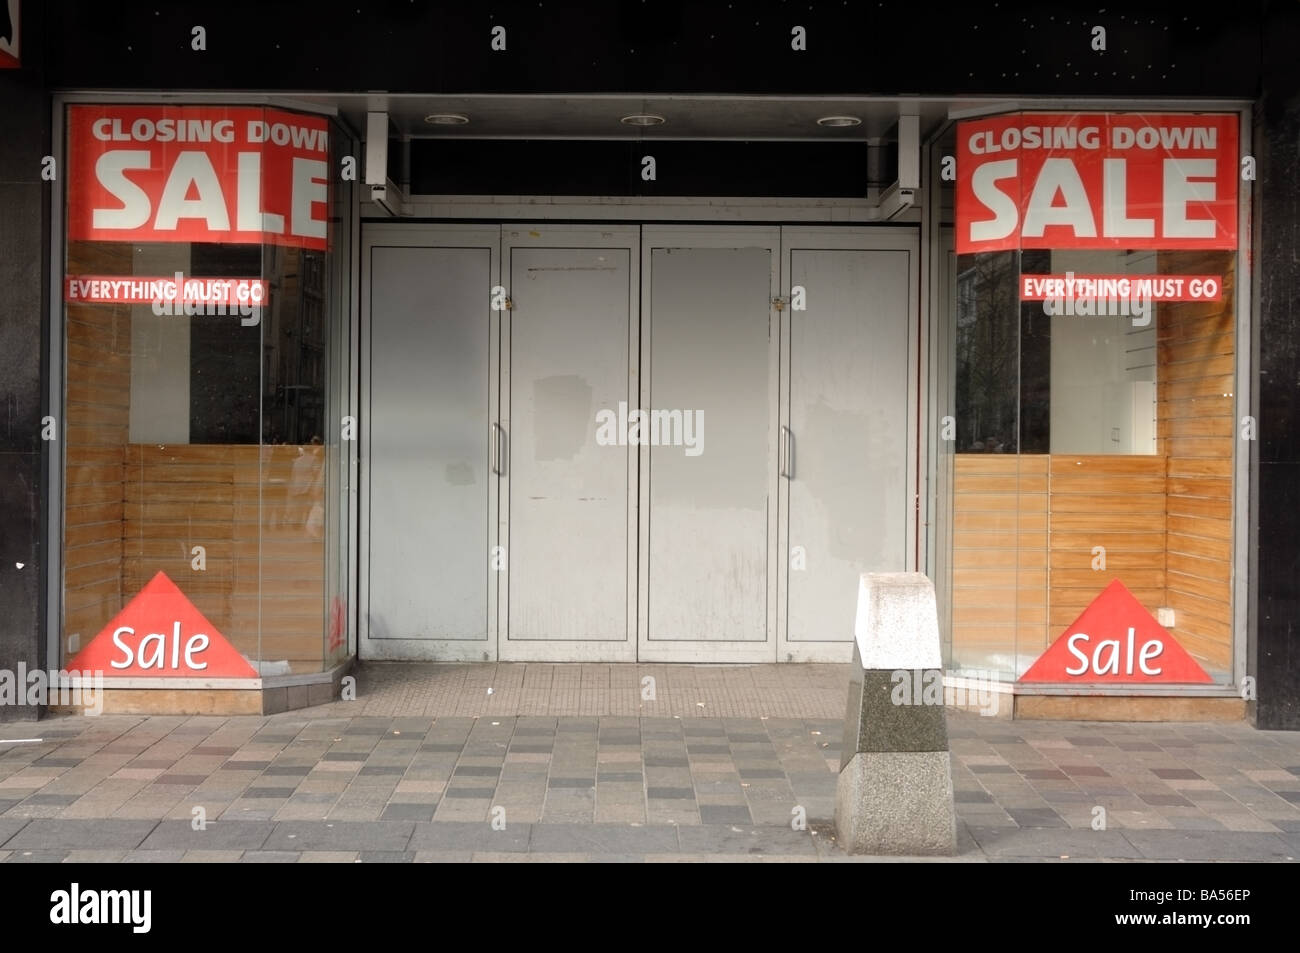 Fotografia del punto di vendita che ha chiuso a causa della recessione e credit crunch. Esso mostra segni di vendita e intavolato. Foto Stock